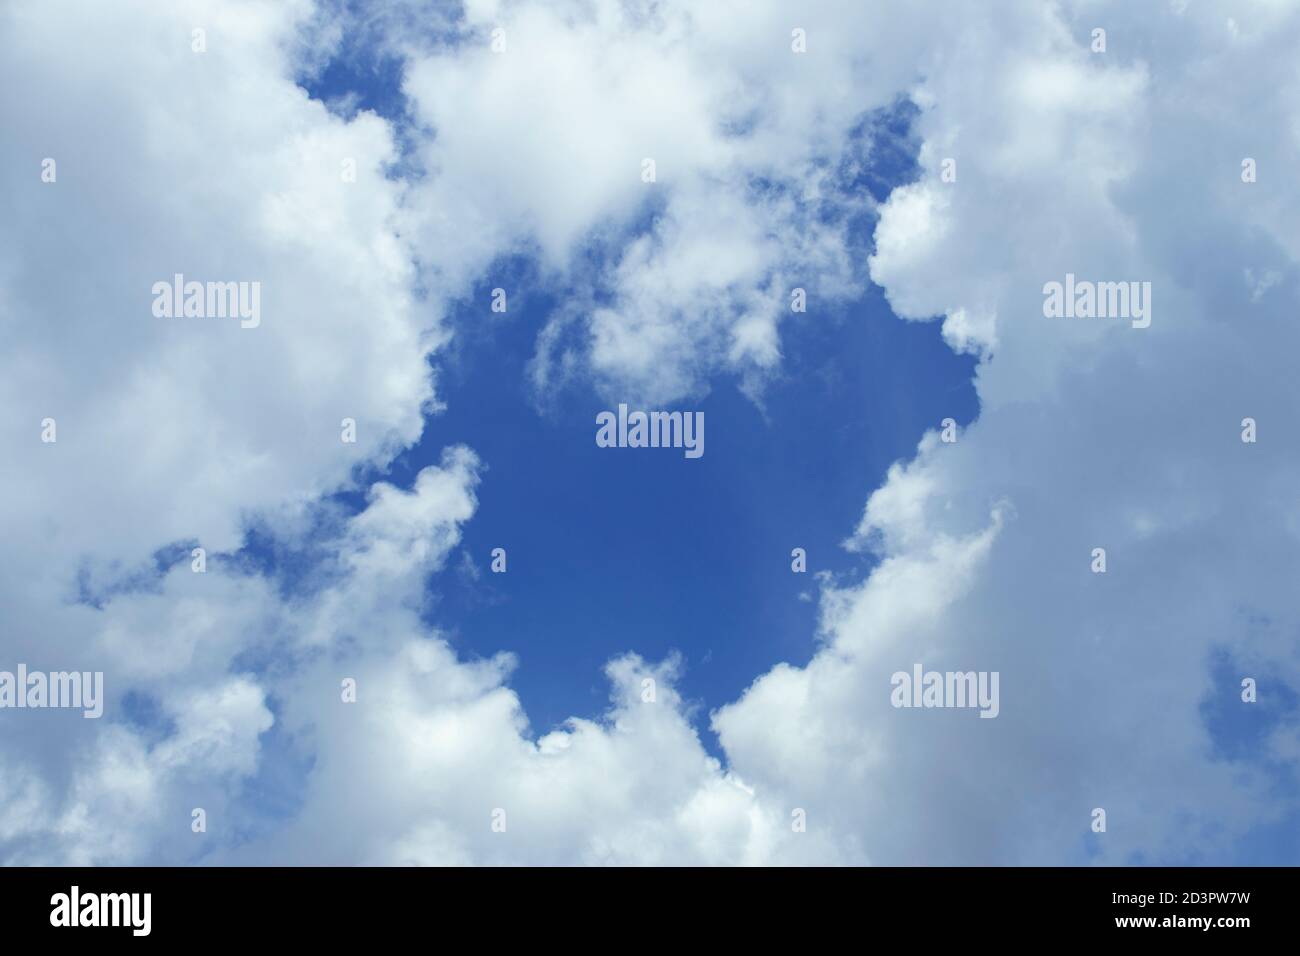 les nuages spectaculaires sont également d'une clarté cristalline. Image de nuages, arrière-plan magnifique. Banque D'Images